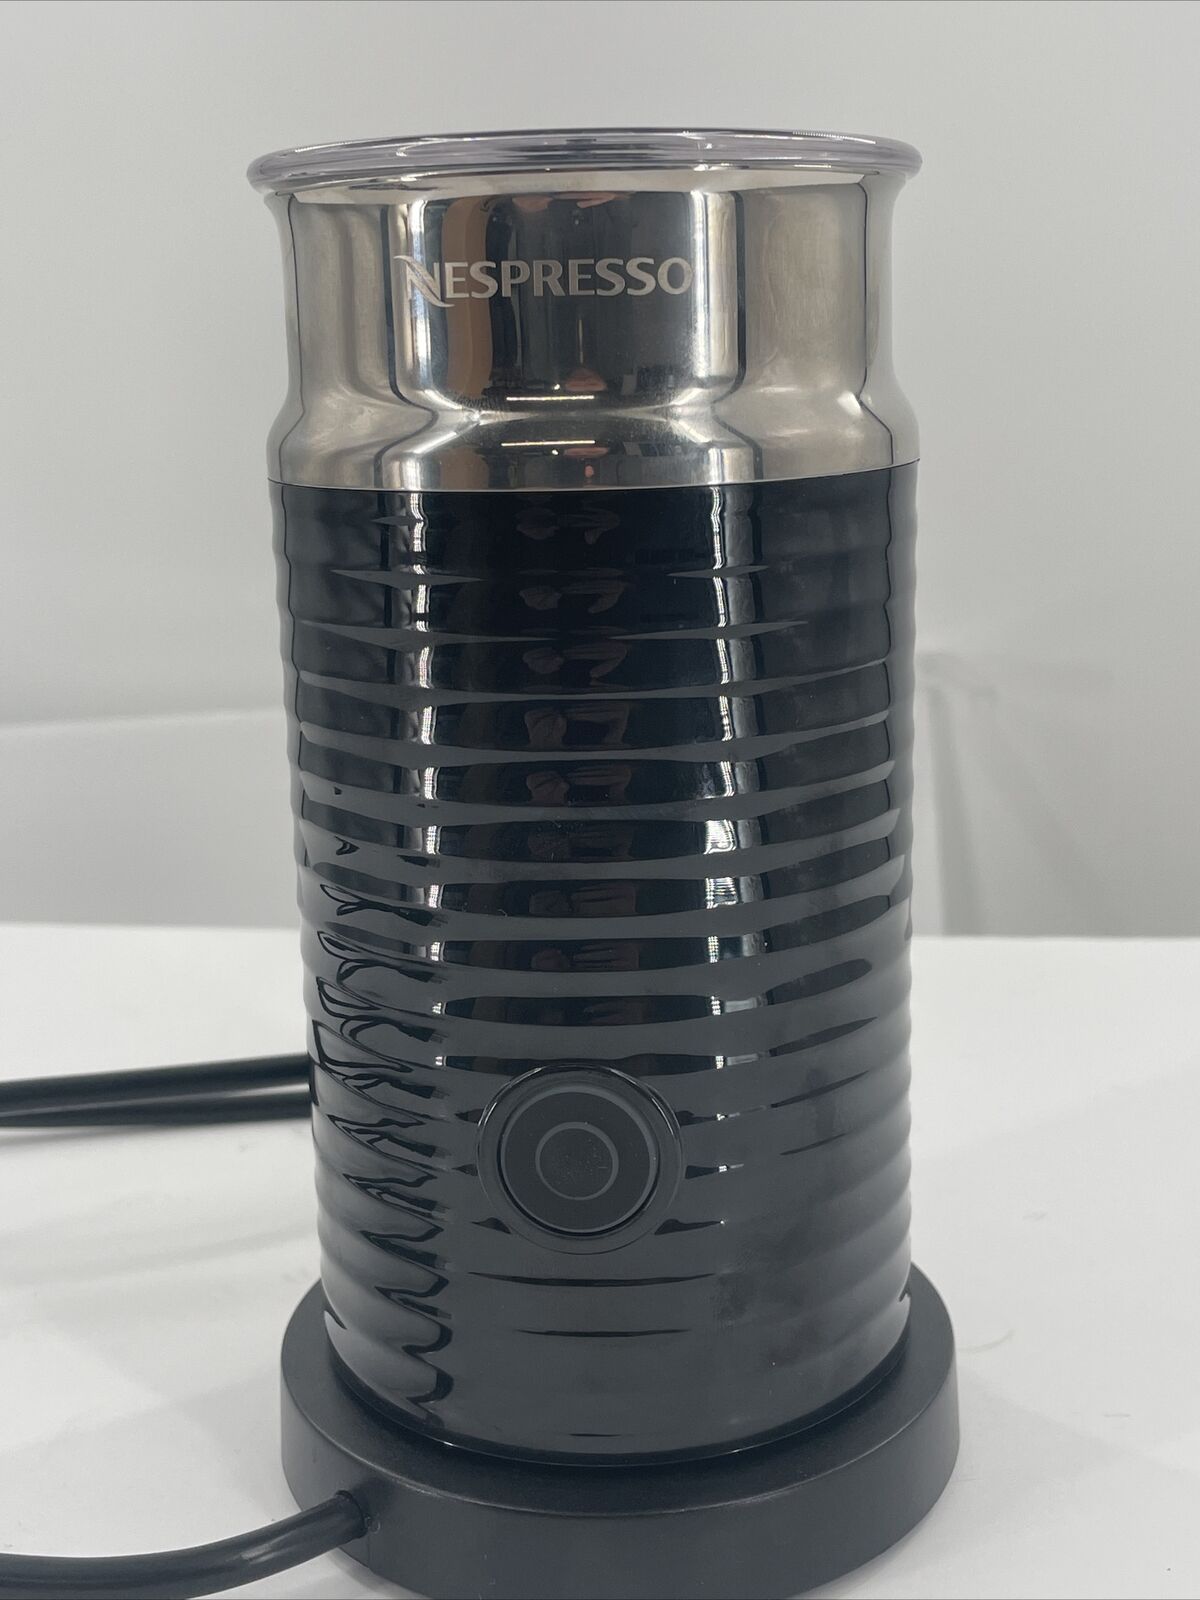 løg bekymre Gå til kredsløbet Nespresso Aeroccino 3 Electric Milk Frother - Black (3694-US-BK)  763003964907 | eBay